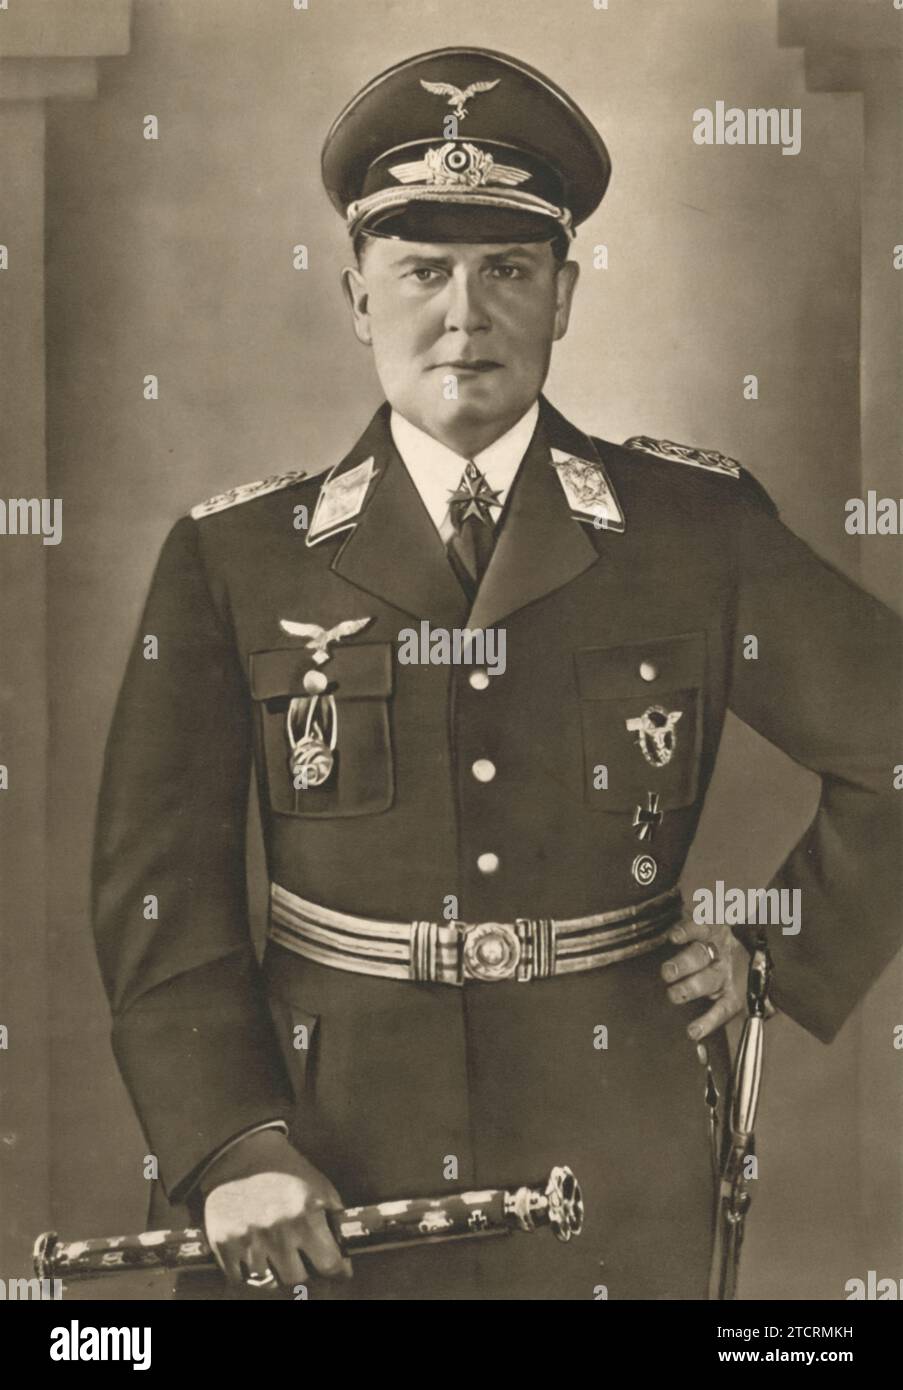 Le maréchal Hermann Göring (né le 12 janvier 1893 - mort le 15 octobre 1946), commandant suprême de la Luftwaffe, l'armée de l'air allemande, pendant la Seconde Guerre mondiale Göring a joué un rôle central dans la reconstruction de la force aérienne allemande dans les années précédant et pendant la guerre. Connu pour son leadership dans la Luftwaffe, il a été une figure clé dans les stratégies militaires de l'Allemagne nazie. Banque D'Images